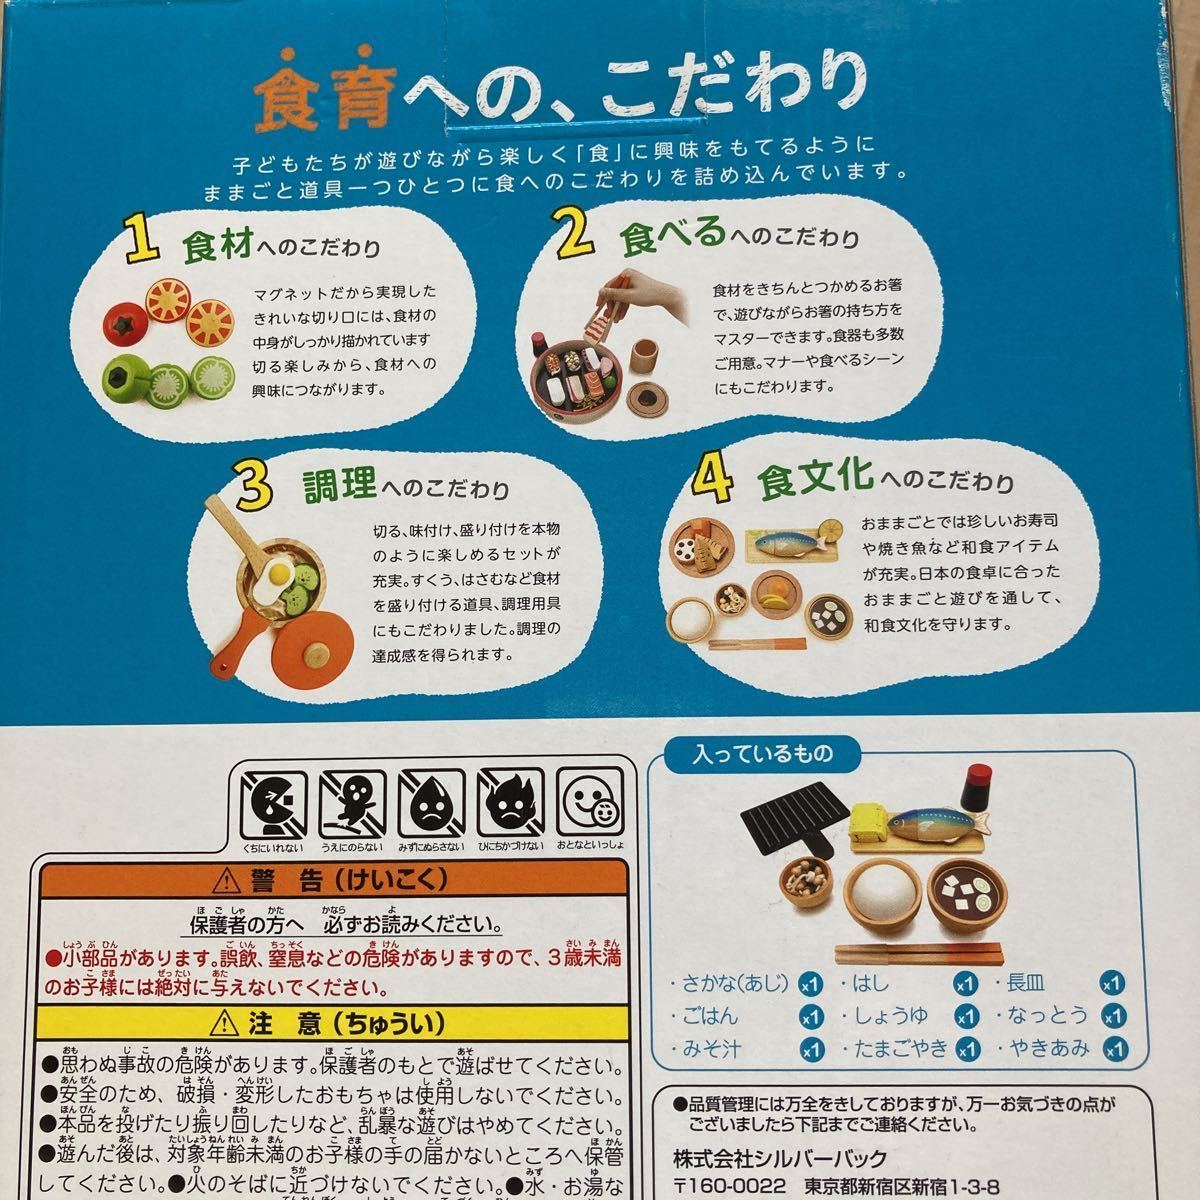  новый товар снят с производства товар 7 рисовое поле тип впервые .. игрушечный японская кухня магазин san комплект дерево. игрушечный комплект ребенок образование woody pti развивающая игрушка деревянная игрушка 